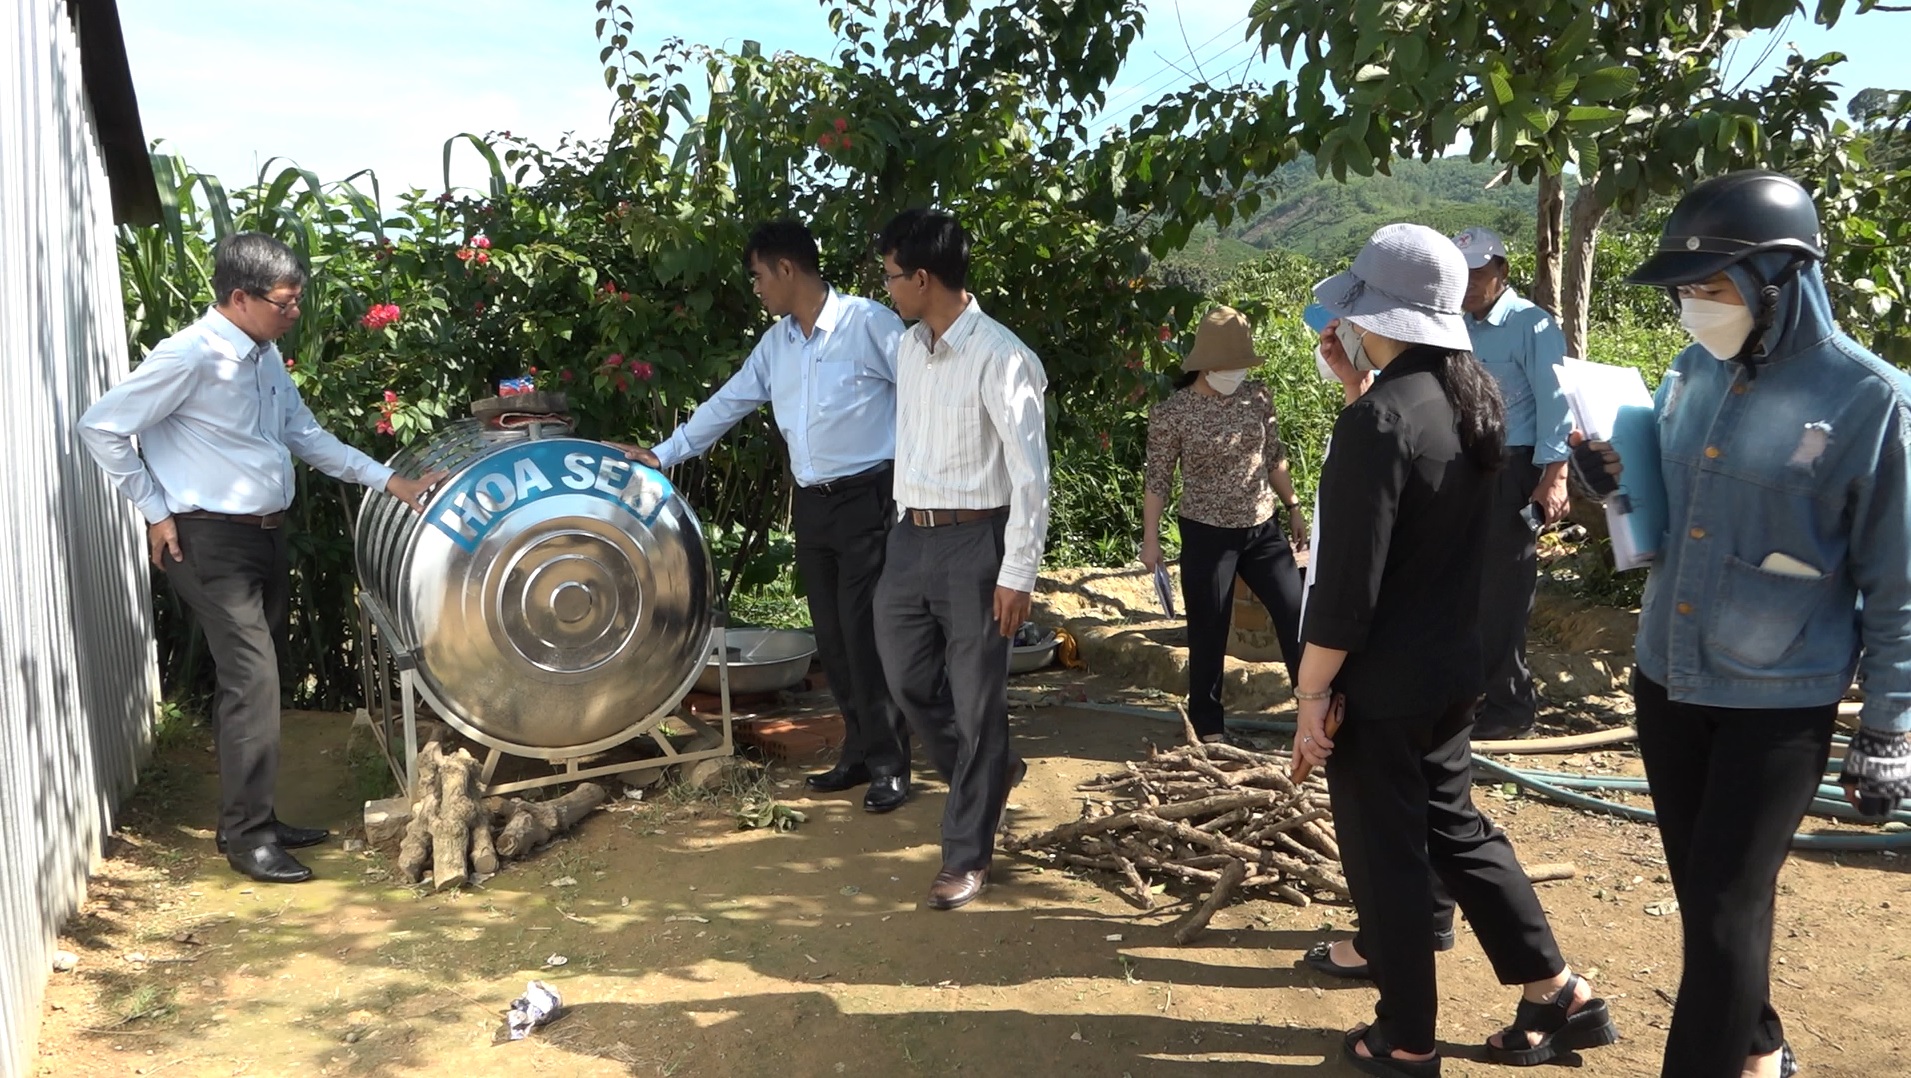 Giảm nghèo ở Lâm Đồng: Hỗ trợ cung cấp nước sạch, đất ở cho hàng ngàn người dân khó khăn - Ảnh 3.